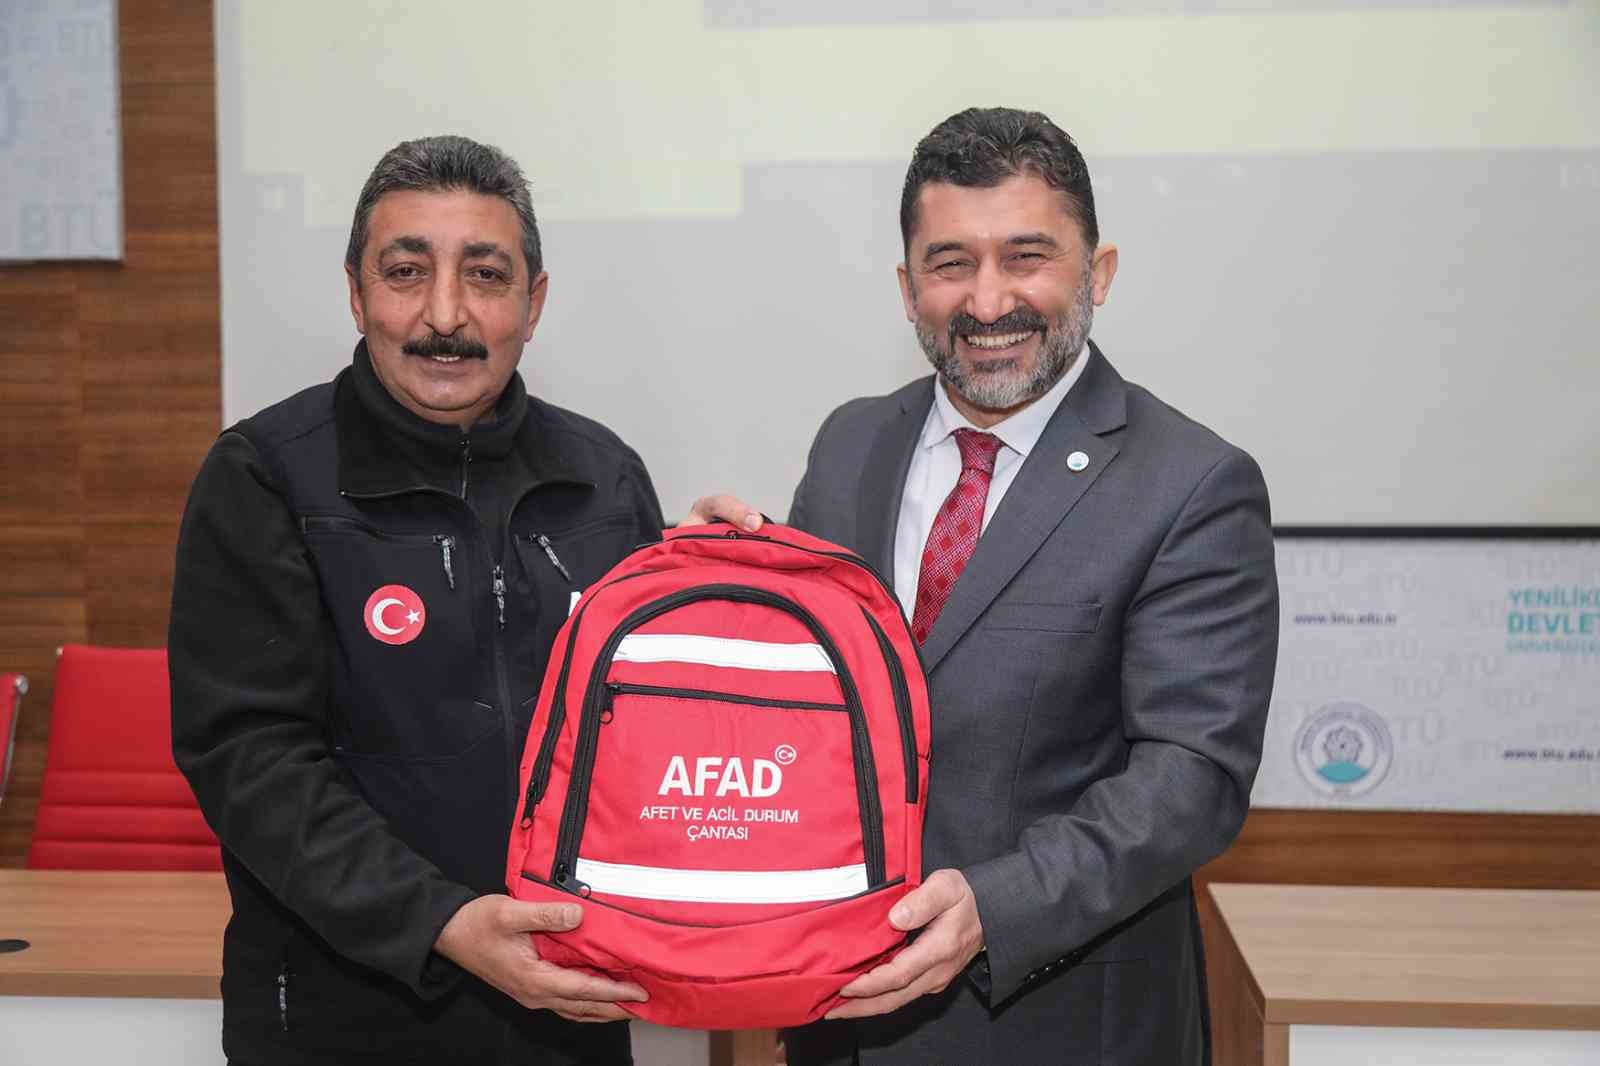 AFAD Bursa İl Müdürü Mumcu: Kurtarma ve yardım faaliyetlerinin koordinasyonu önemli